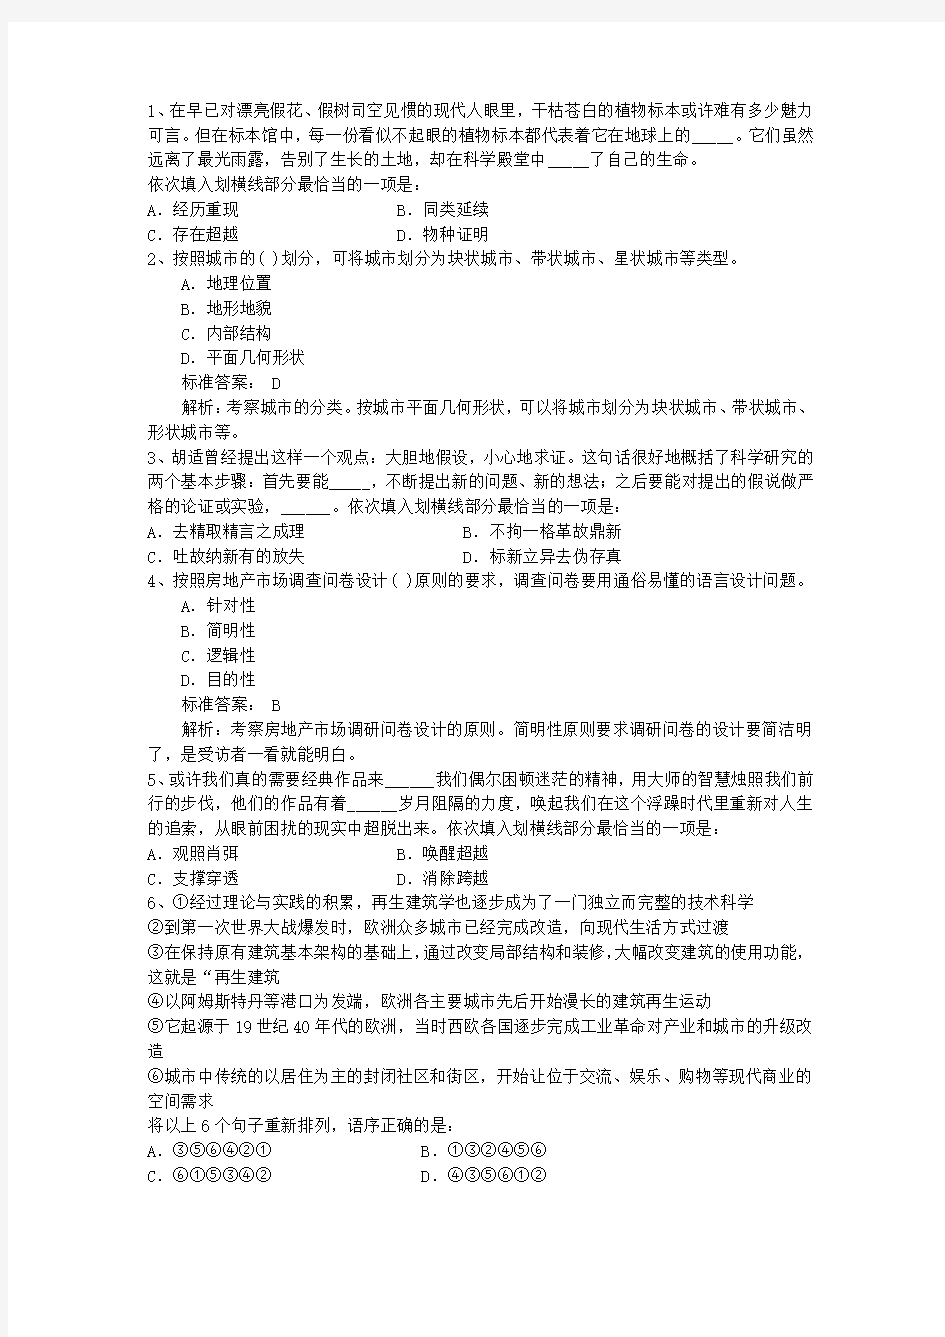 2014年国考长江航运公安局面试确认与邮寄材料审查公告带答案和解析